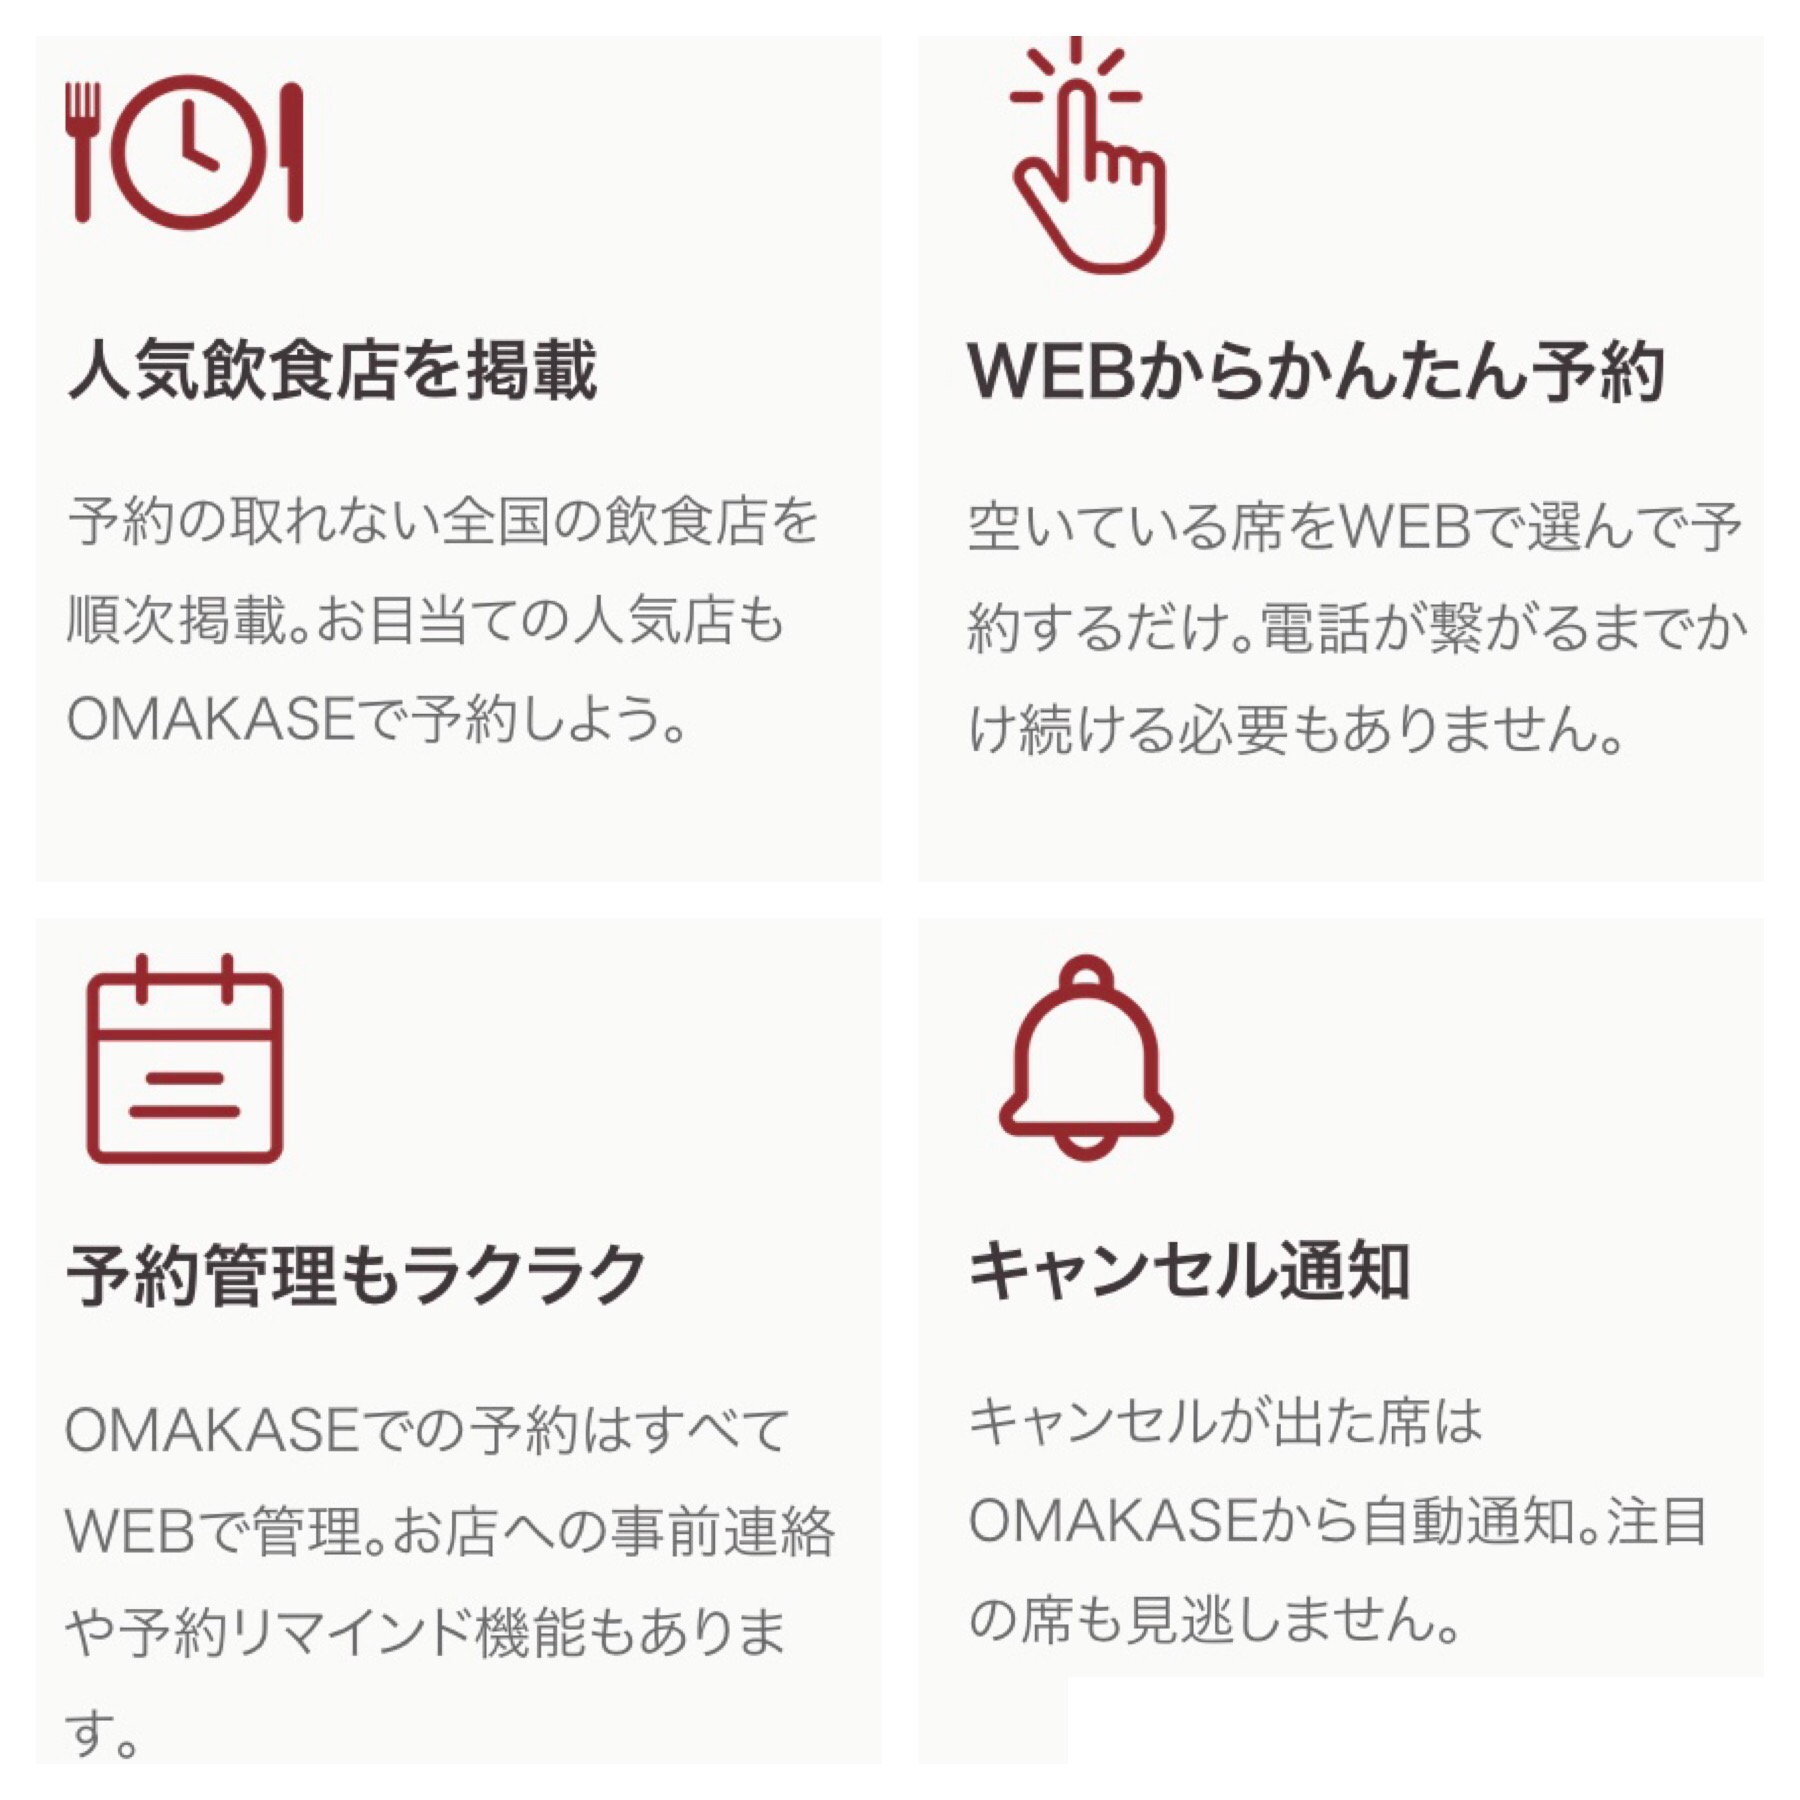 関西でガチで予約が取れない飲食店10選 予約を取る方法も たびすぽ